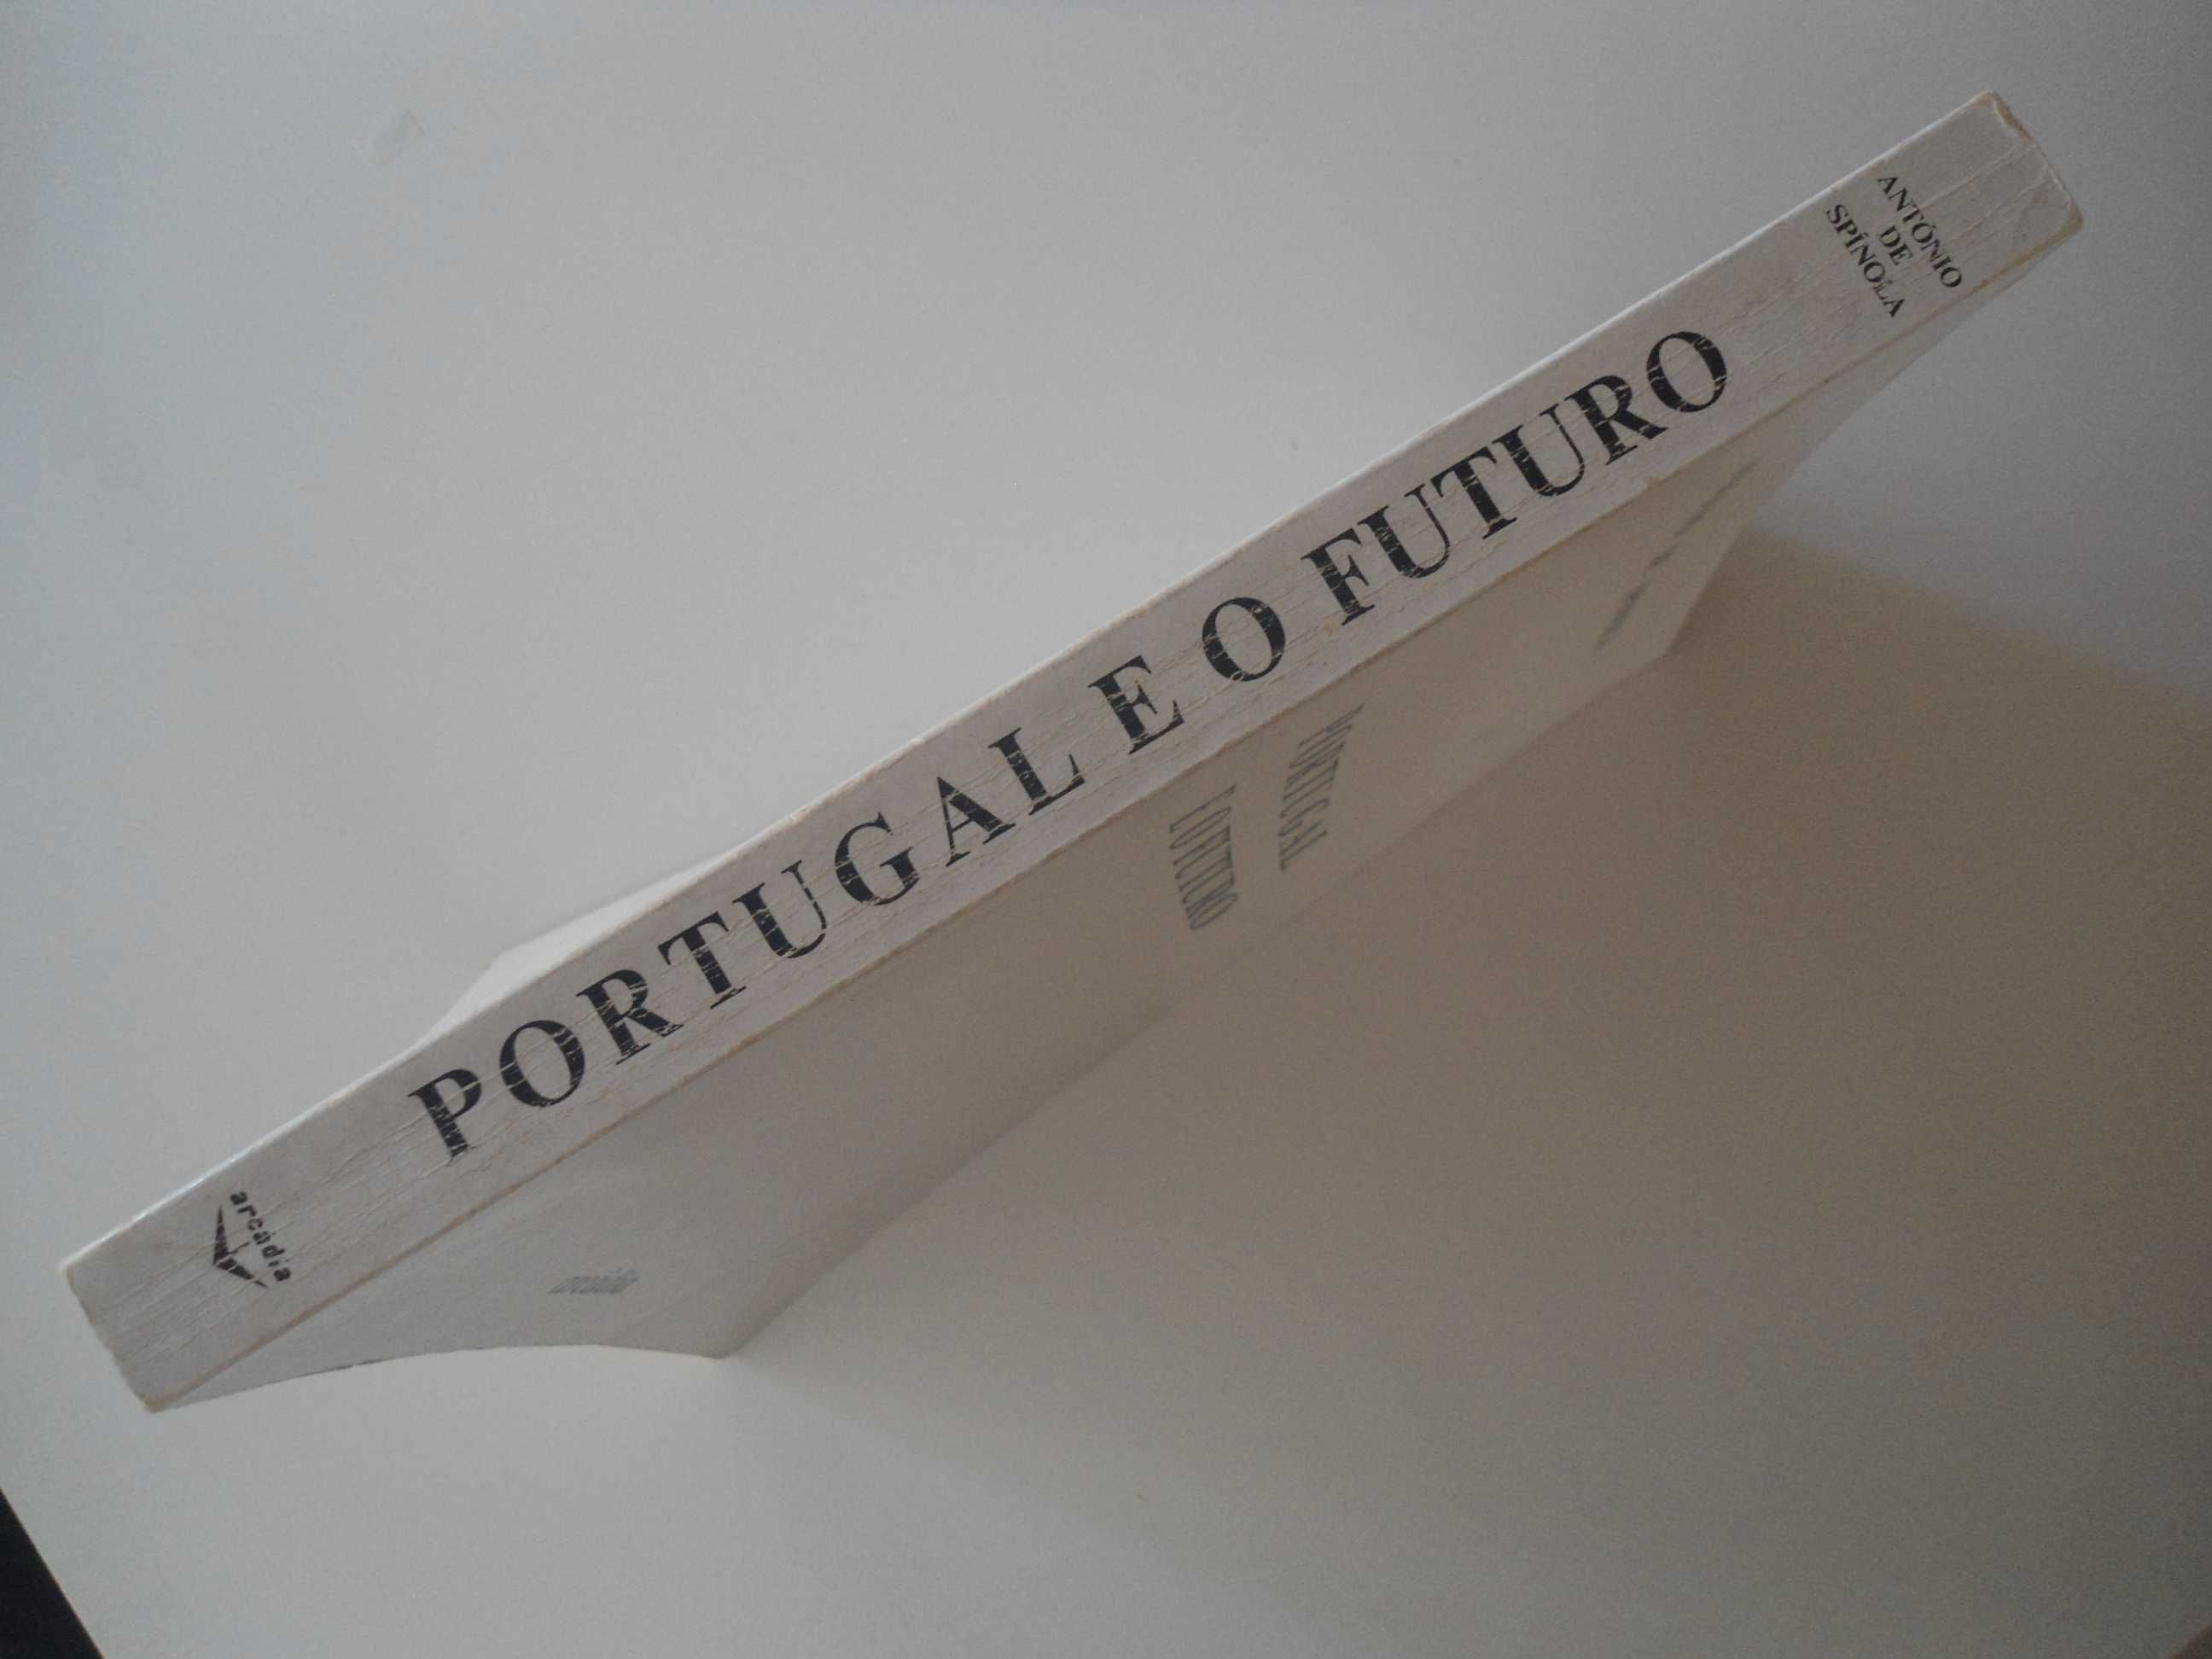 Portugal e o Futuro por António de Spínola (1974)